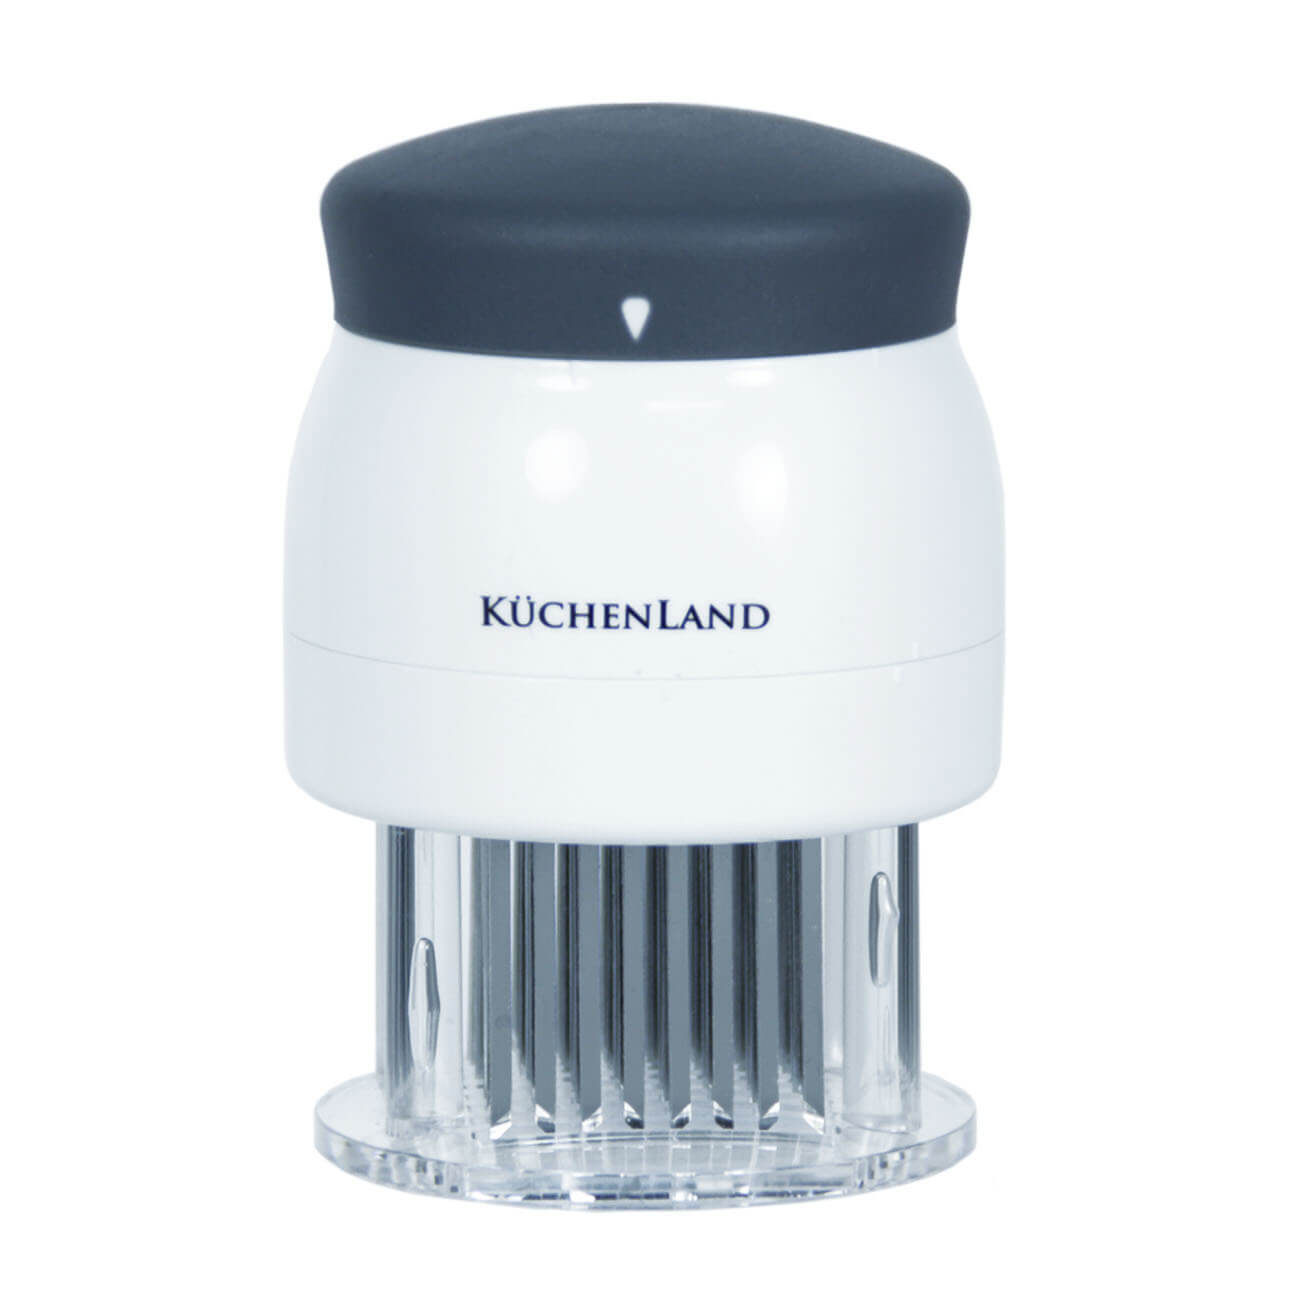 Kuchenland Тендерайзер, 8х11 см, 72 лезвия, сталь/пластик, белый, Grinding лезвия hardy